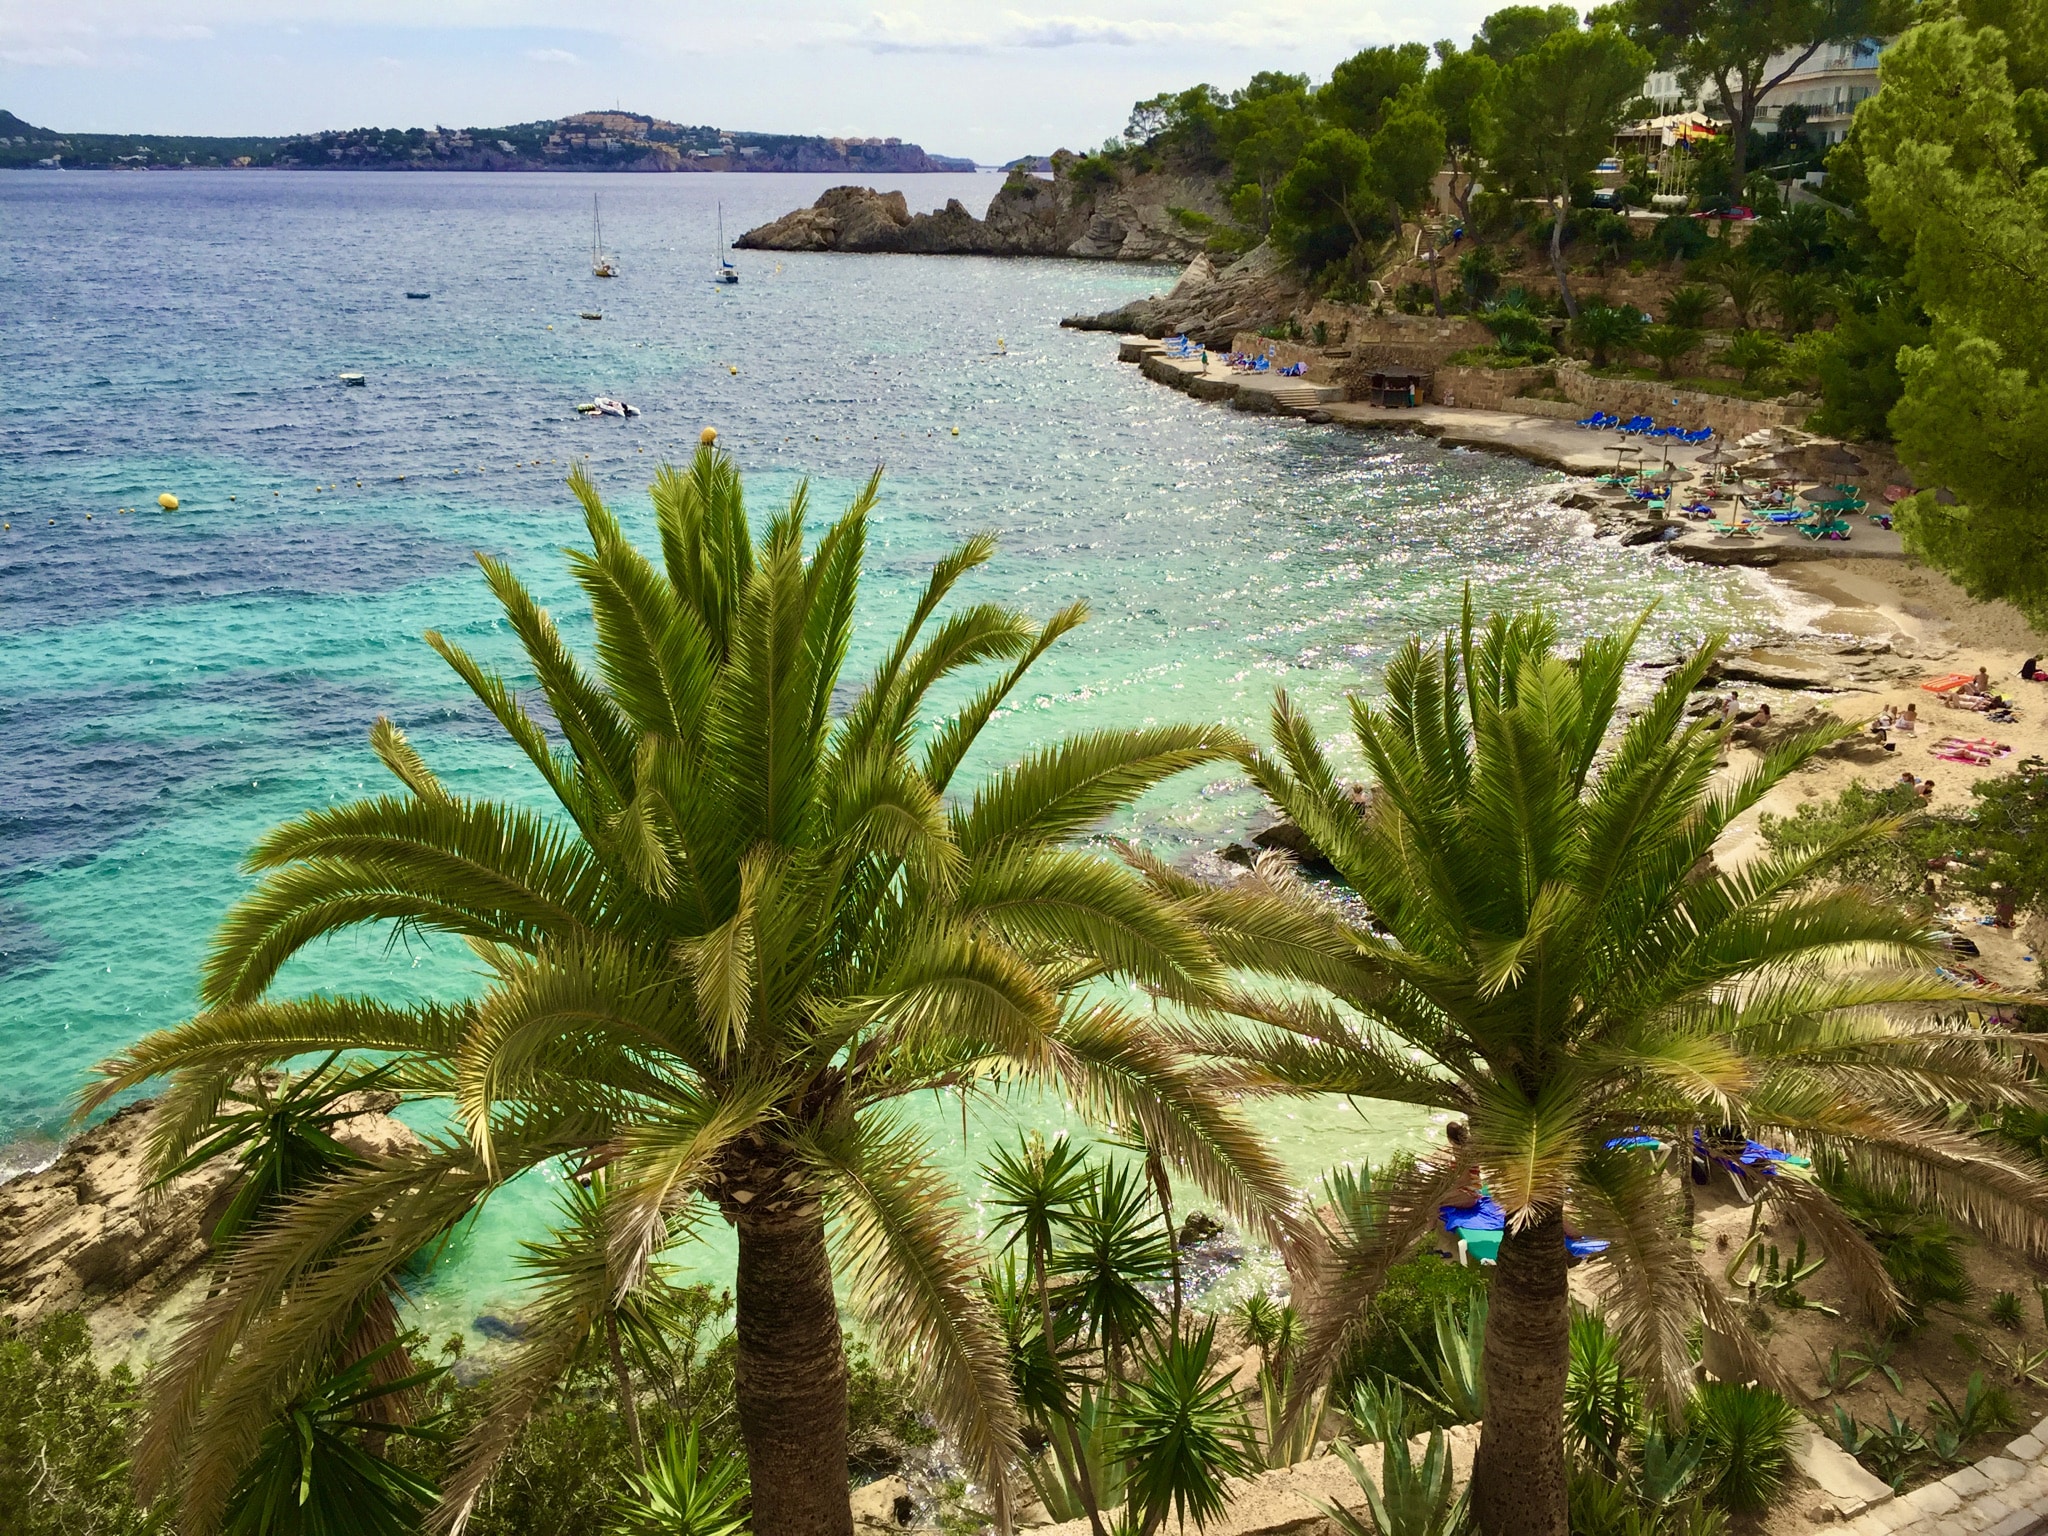 Carnet de voyage Majorque – conseils et expériences d’une île pleine de joie